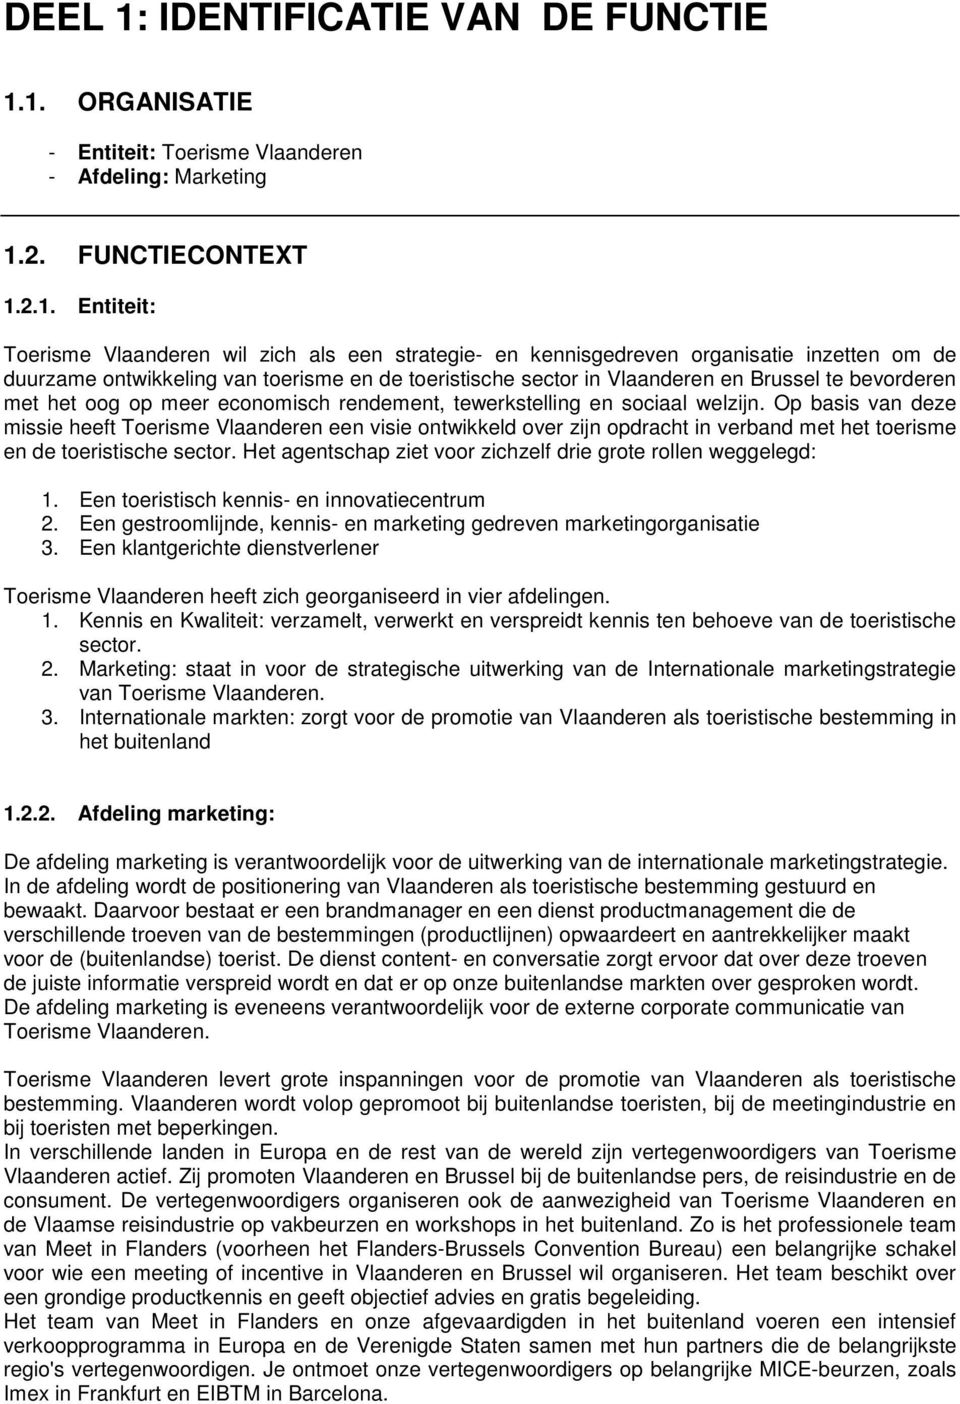 1. ORGANISATIE - Entiteit: Toerisme Vlaanderen - Afdeling: Marketing 1.2. FUNCTIECONTEXT 1.2.1. Entiteit: Toerisme Vlaanderen wil zich als een strategie- en kennisgedreven organisatie inzetten om de